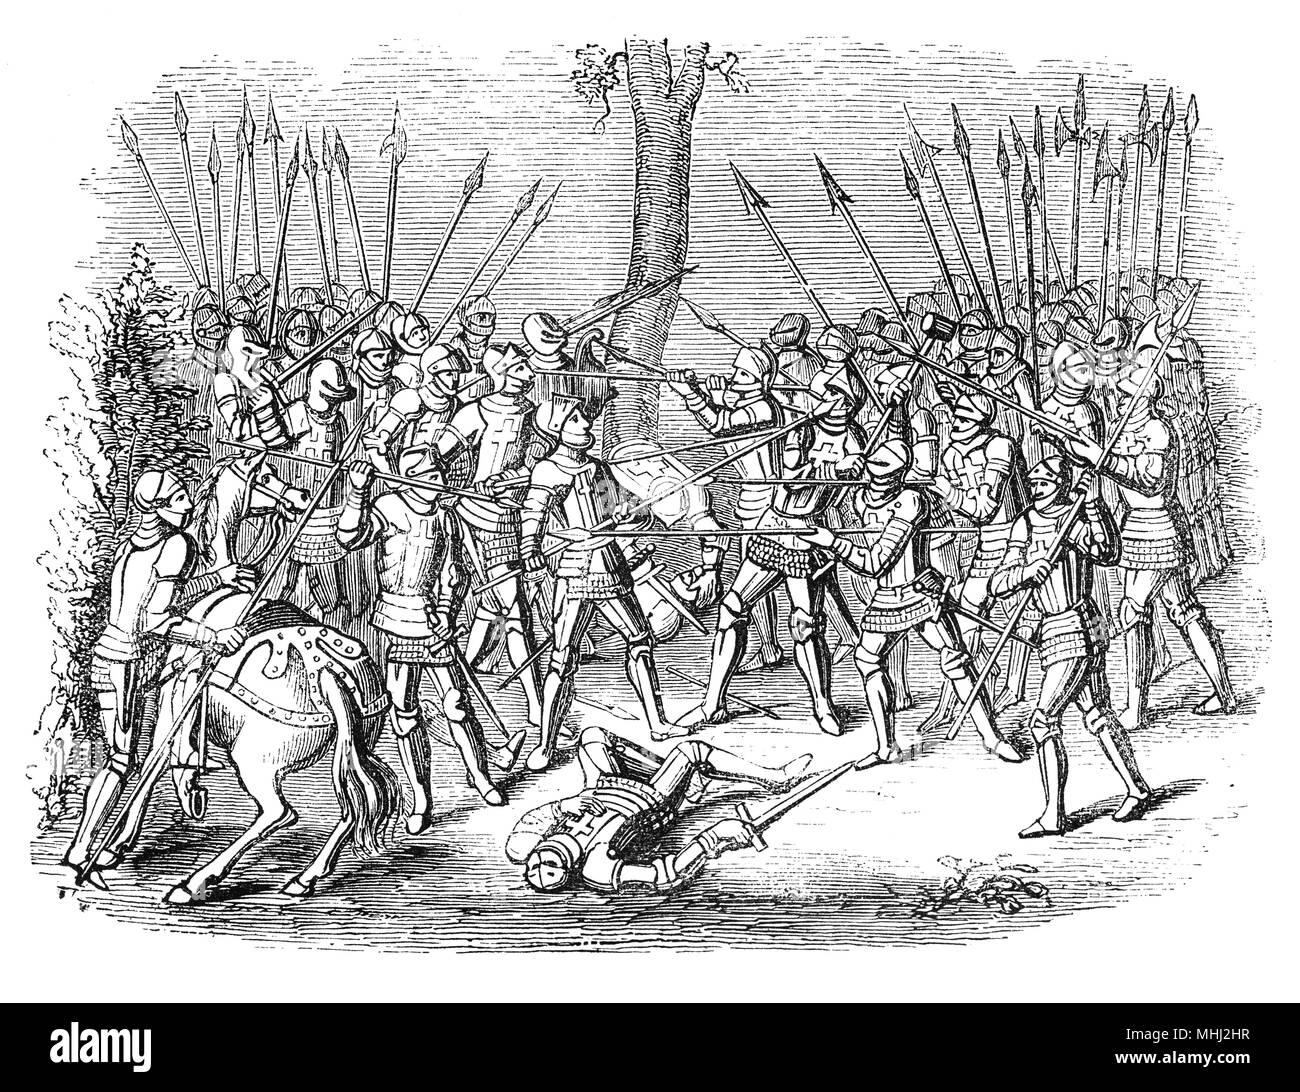 La Mêlée était un type de simulation de combat dans des tournois médiévaux dans le but d'écraser dans l'ennemi dans la formation de masse, dans le but de les jeter en arrière ou de briser leurs rangs. Le tournoi a eu un regain de popularité en Angleterre dans la première moitié du 14e siècle, mais il est mort pendant le règne d'Édouard III, qui a encouragé l'évolution vers l'apparat et une prédominance de jouter dans son parrainage d'événements. Dans le dernier vrai tournoi organisé en Angleterre en 1342 à Dunstable, la mêlée a été reporté si longtemps par lancés dans le soleil coulait par le temps les lignes chargées. Banque D'Images